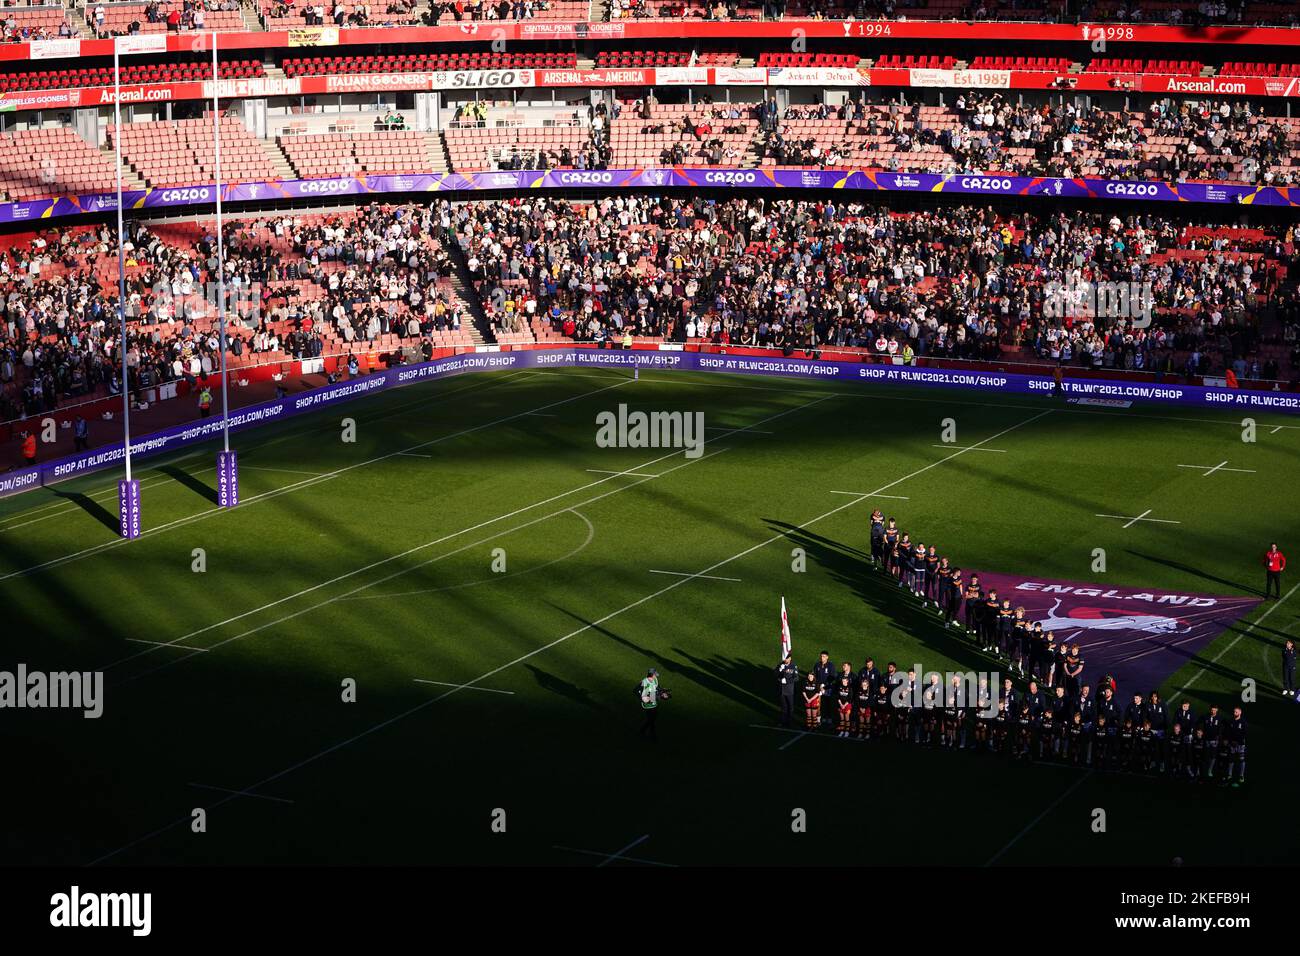 L'Inghilterra si allineerà prima della partita di semi-finale della Coppa del mondo di Rugby all'Emirates Stadium, Londra. Data immagine: Sabato 12 novembre 2022. Foto Stock